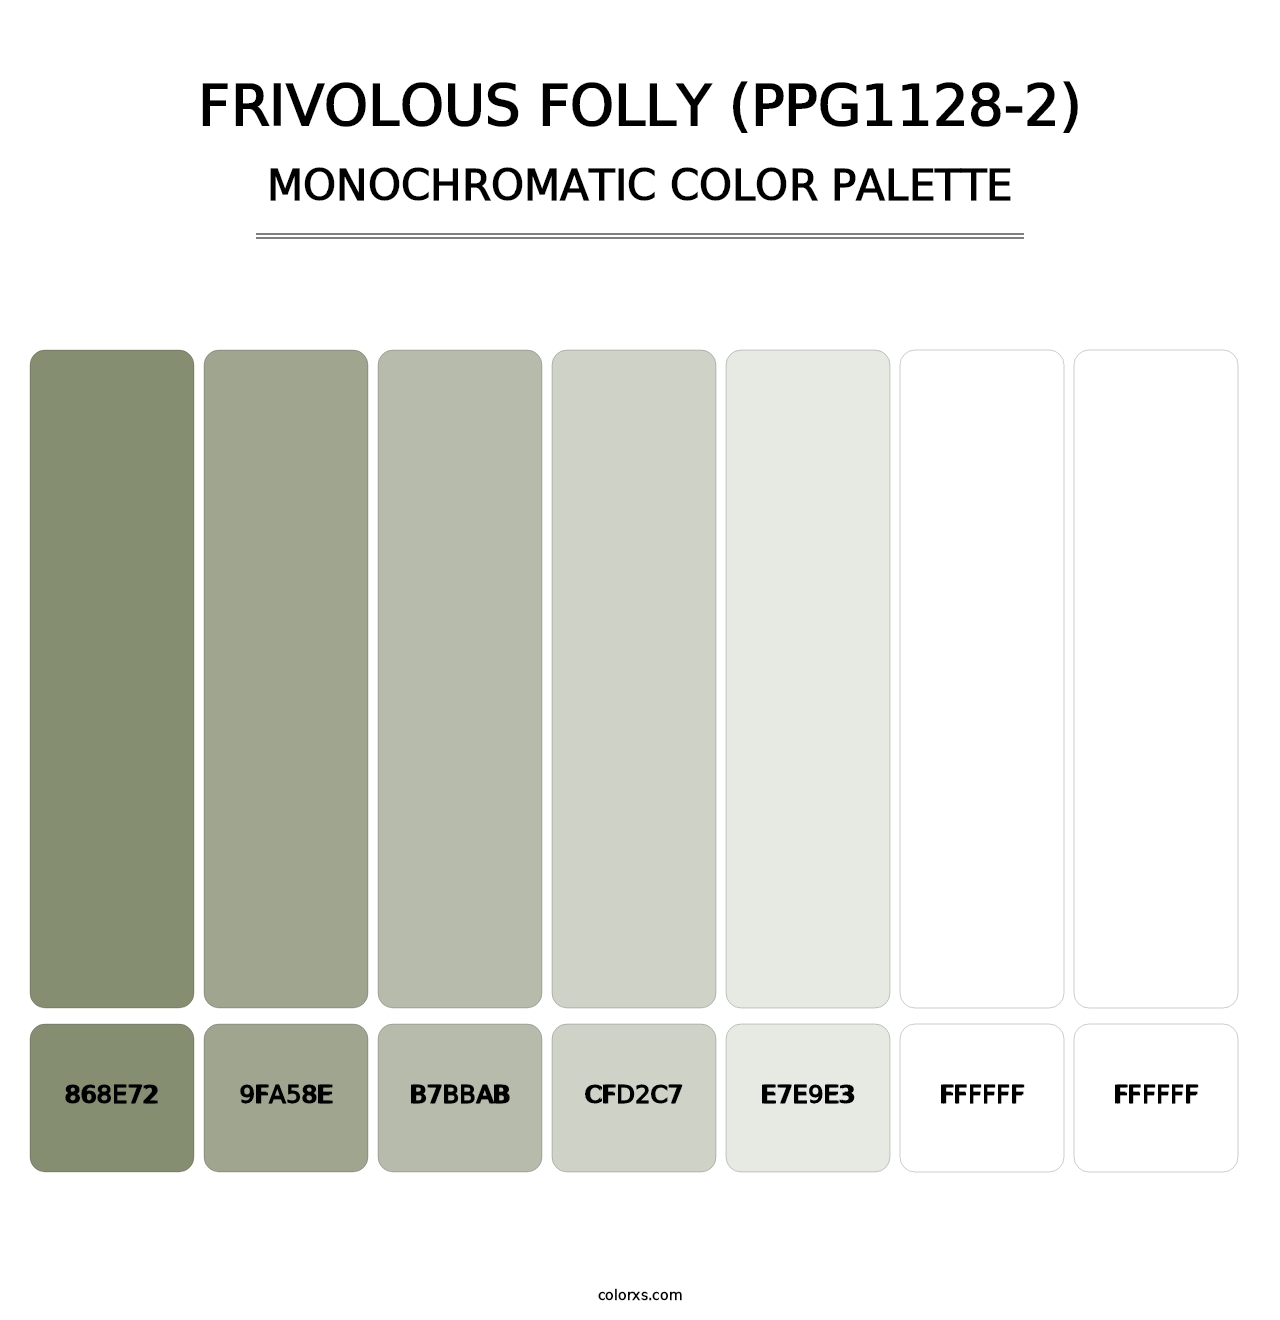 Frivolous Folly (PPG1128-2) - Monochromatic Color Palette